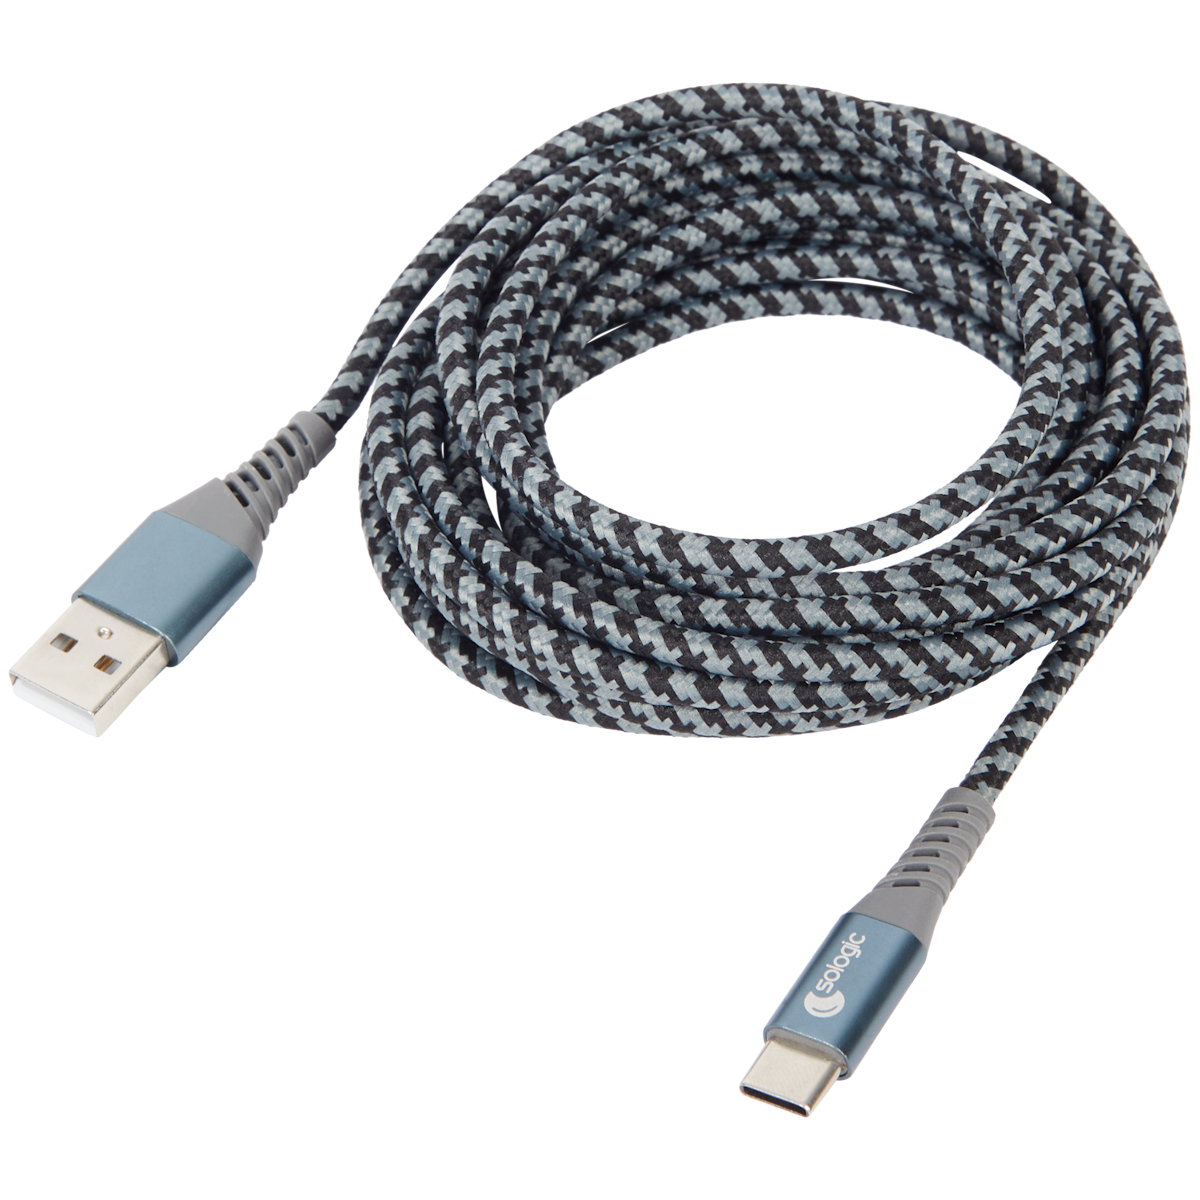 Cable de carga y datos Sologic USB-A a USB-C